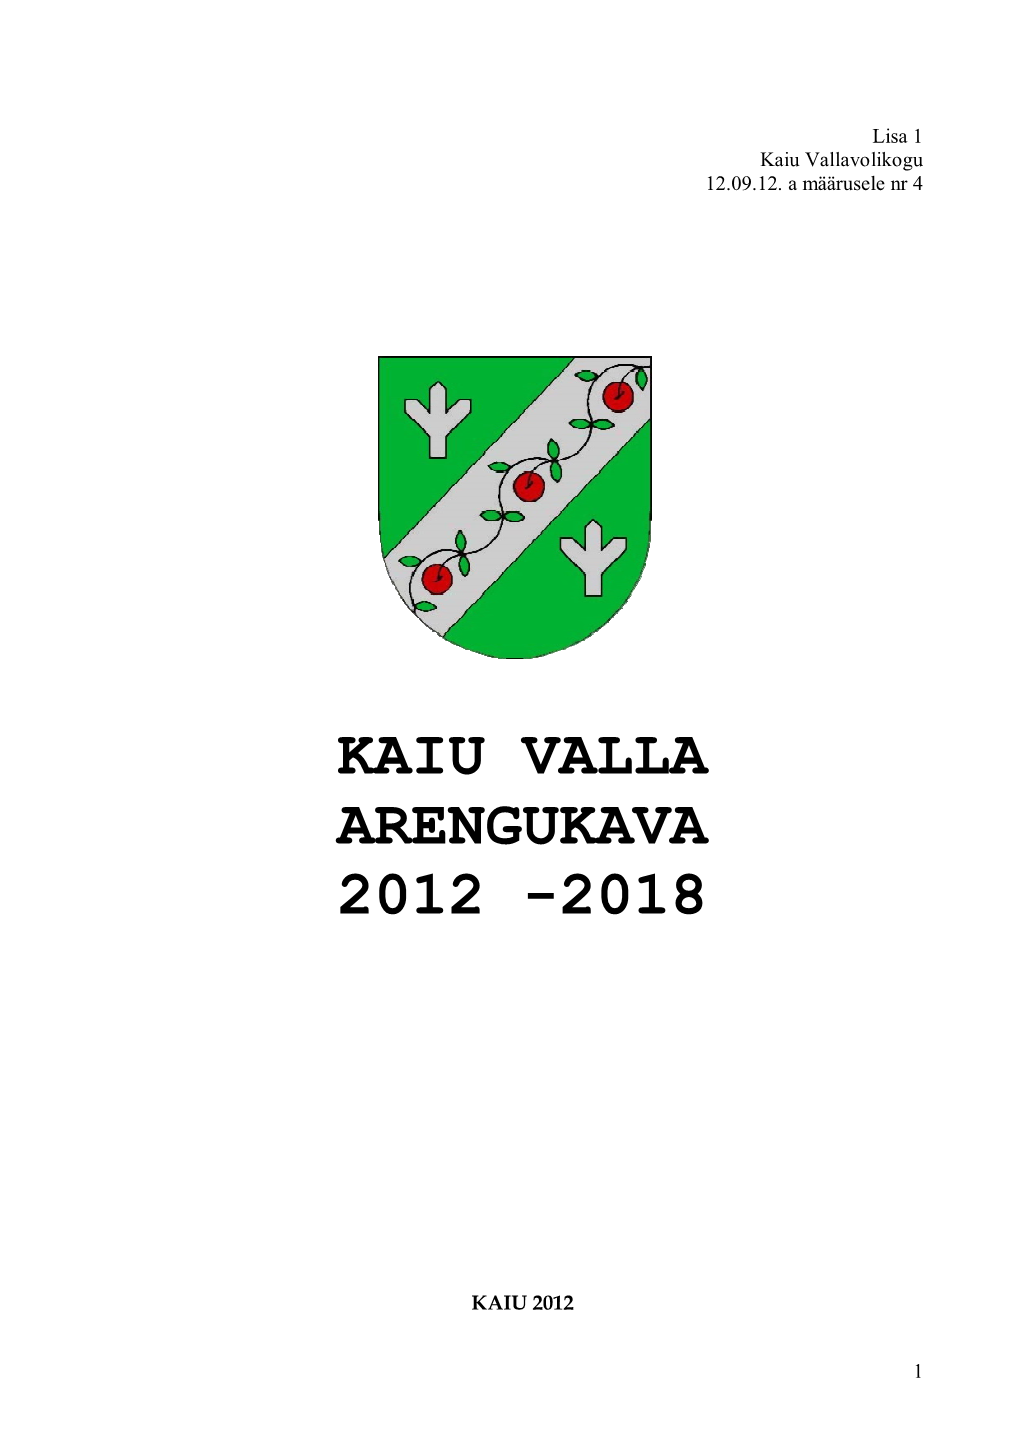 Kaiu Valla Arengukava 2012 -2018